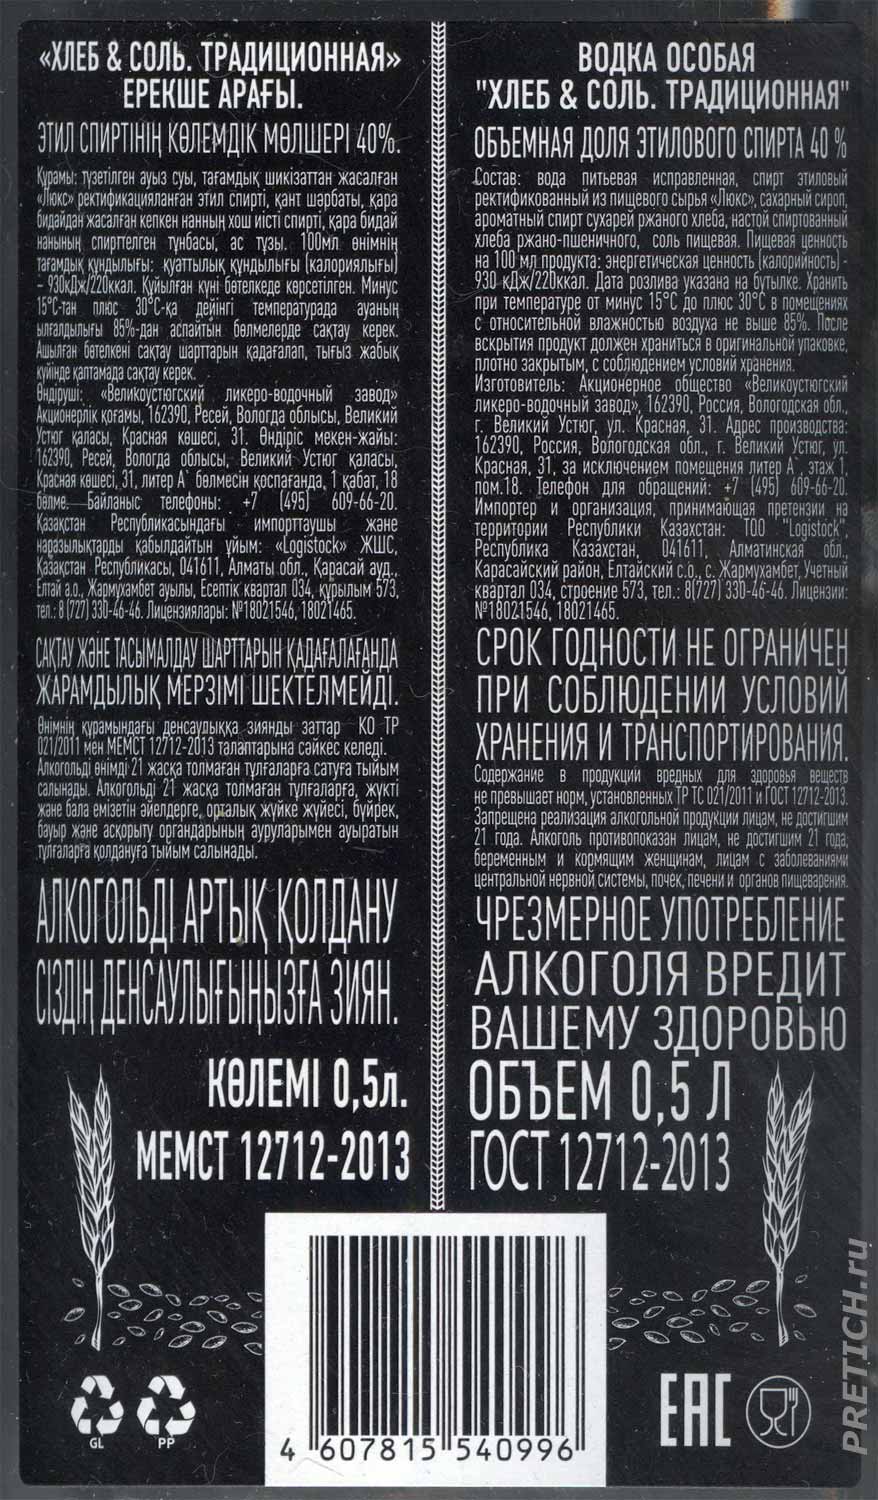 Хлеб и соль состав российской водки, Великолукский завод, описание